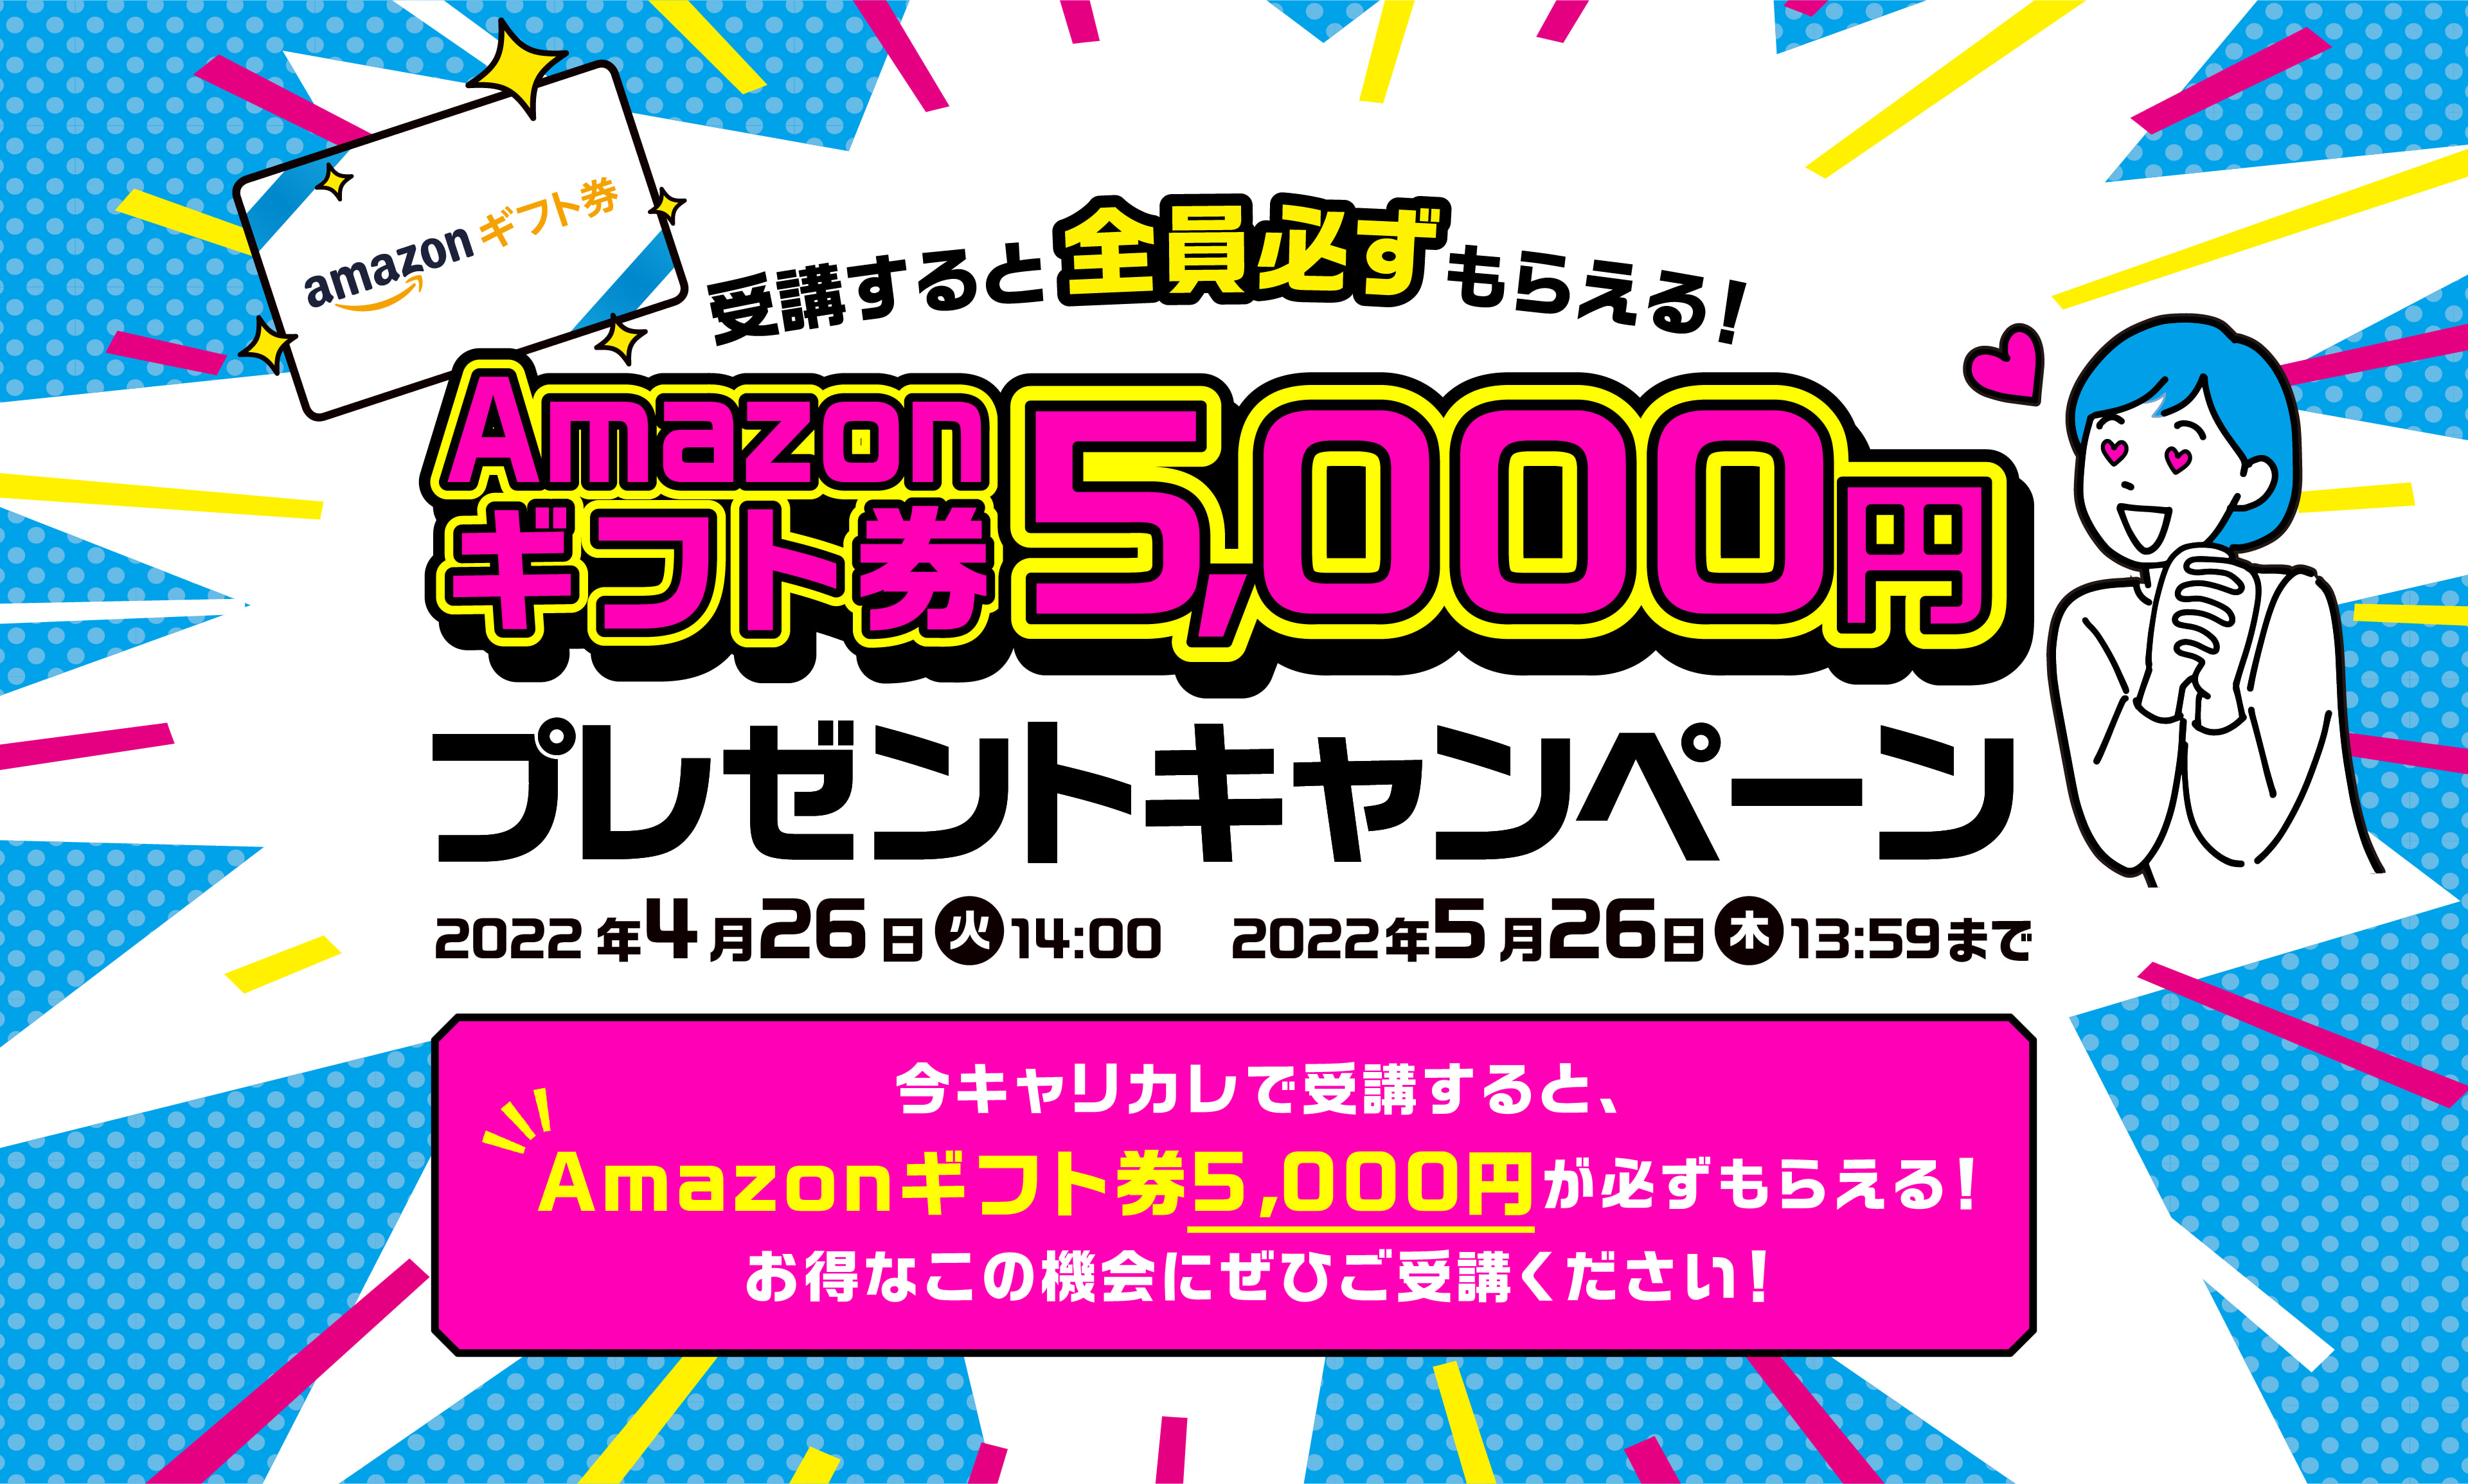 受講すると全員必ずもらえる! Amazonギフト券 5,000円 プレゼントキャンペーン 2022年 4月26日 14:00